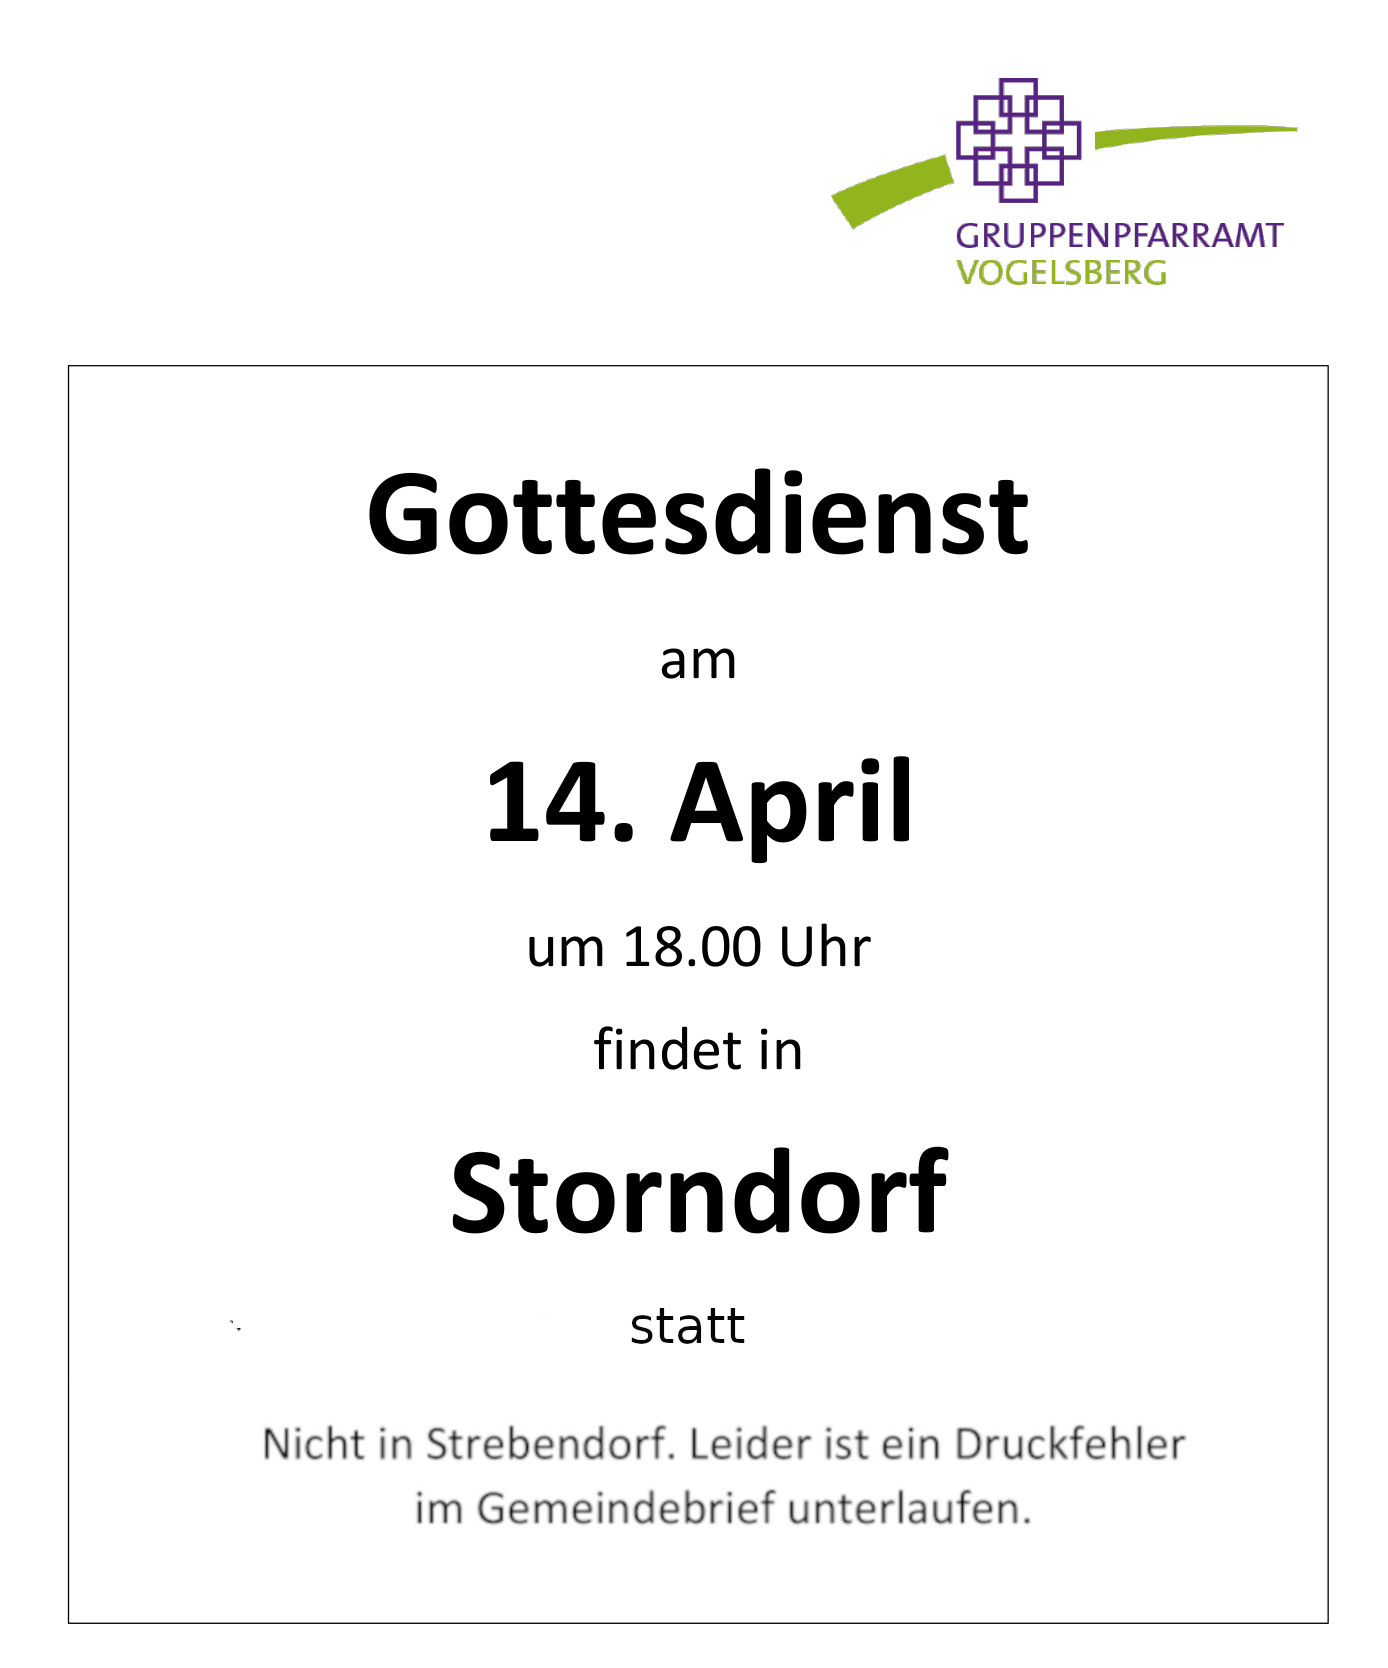 24.04.14 gottesdienst in storndorf